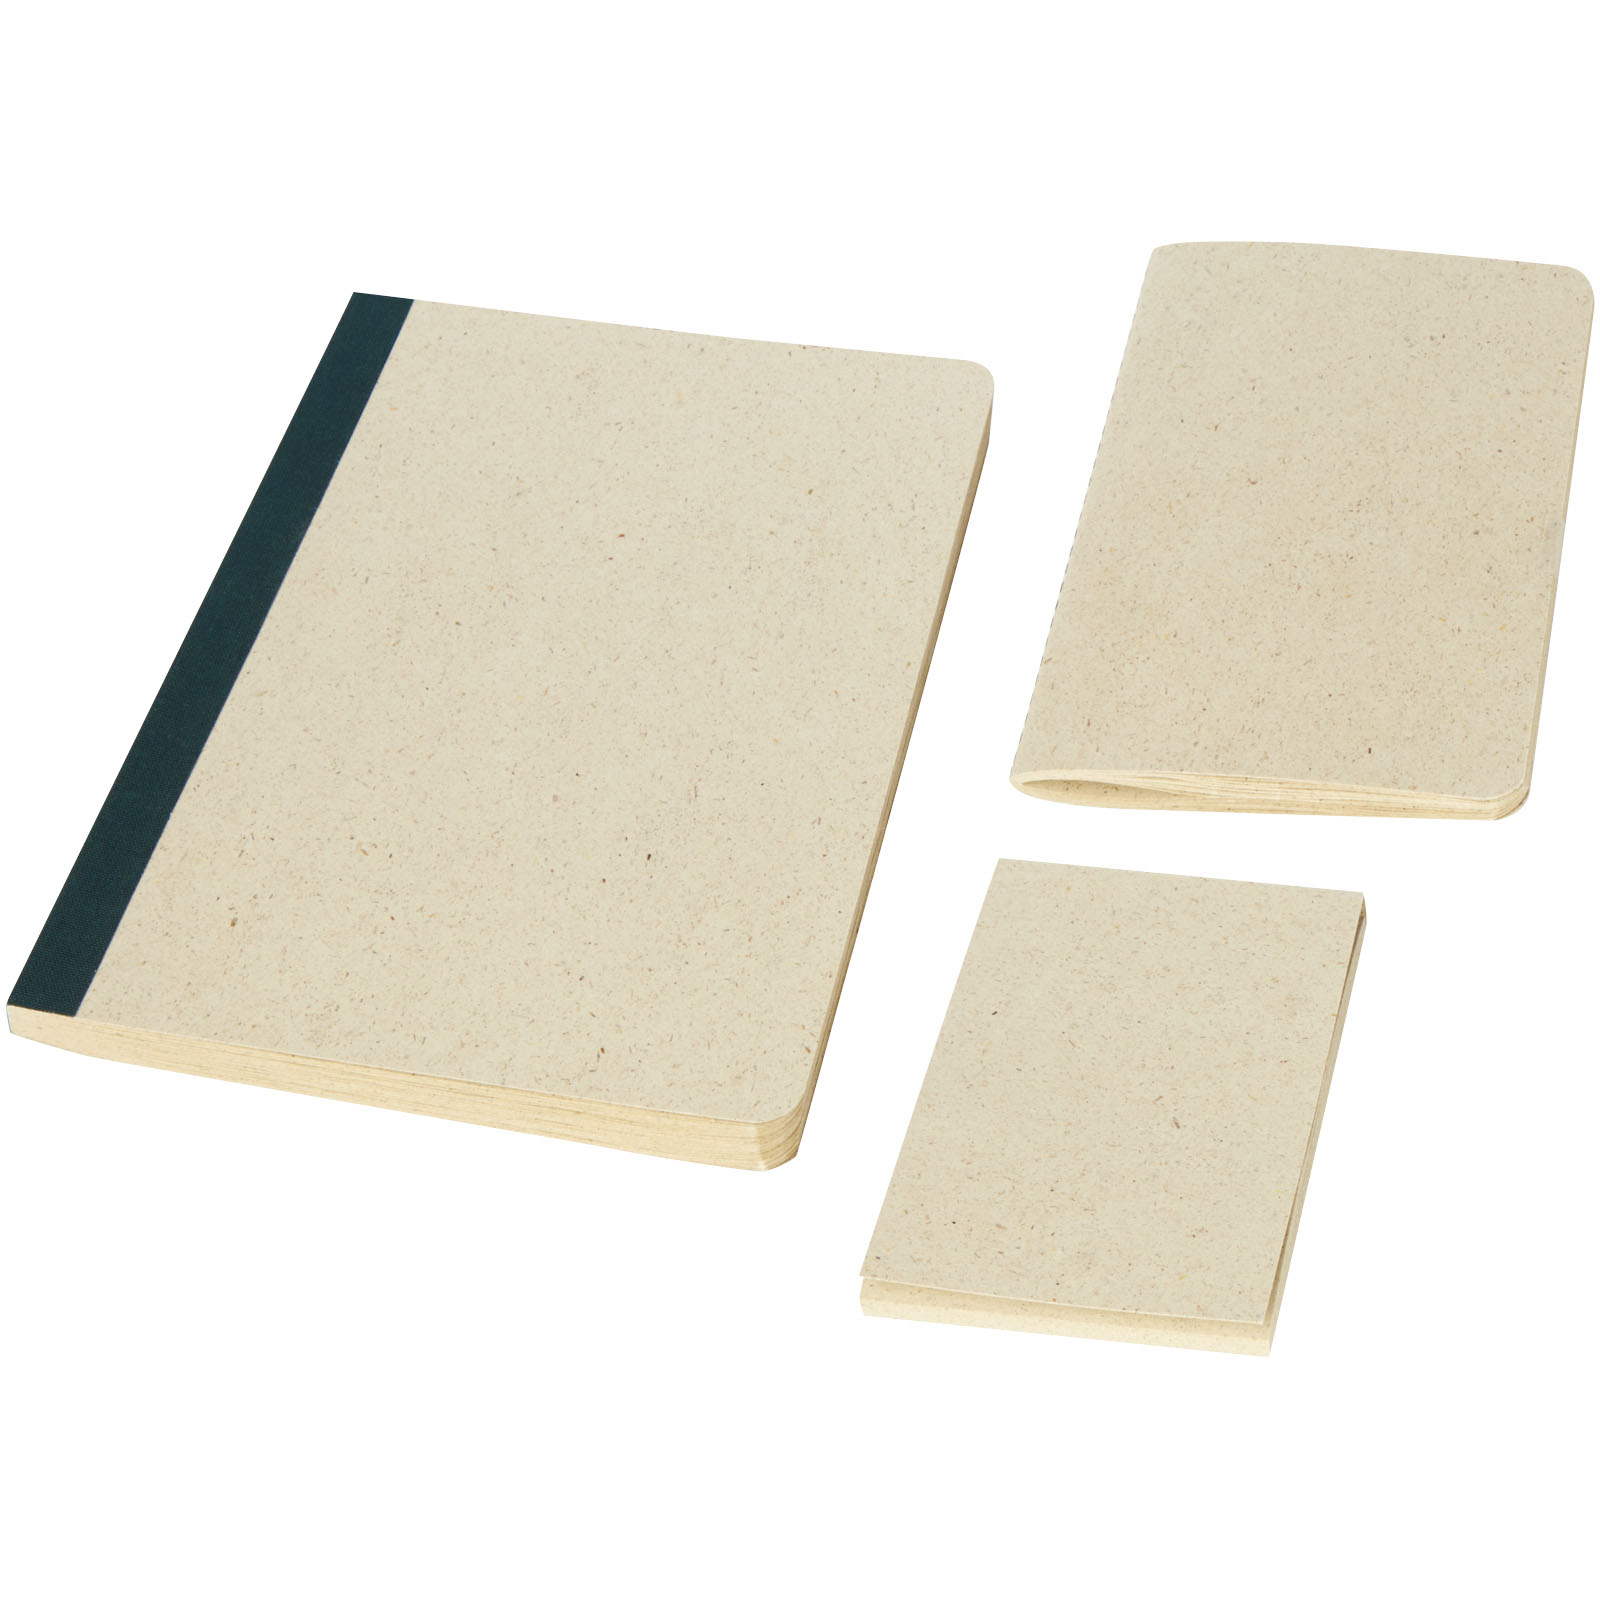 Blocs-notes et essentiels pour le bureau - Parure Verde de 3 articles de papeterie en papier fabriqué à partir d'herbe